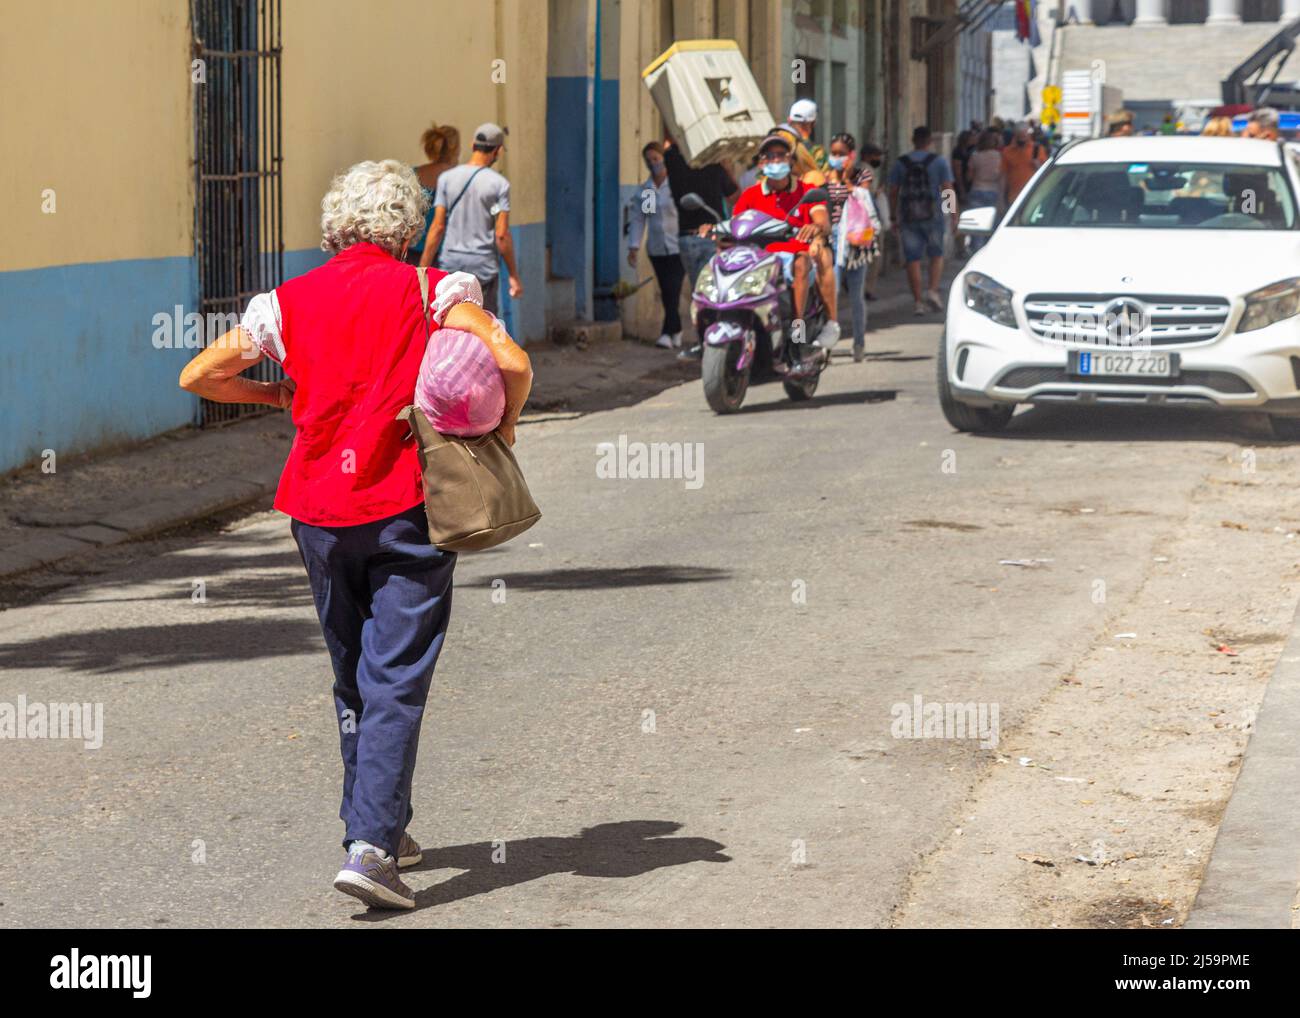 Una mujer cubana mayor con una blusa roja camina por una calle estrecha de la ciudad donde se ve a otras personas en su estilo de vida diario. Algunos llevan una caja Foto de stock